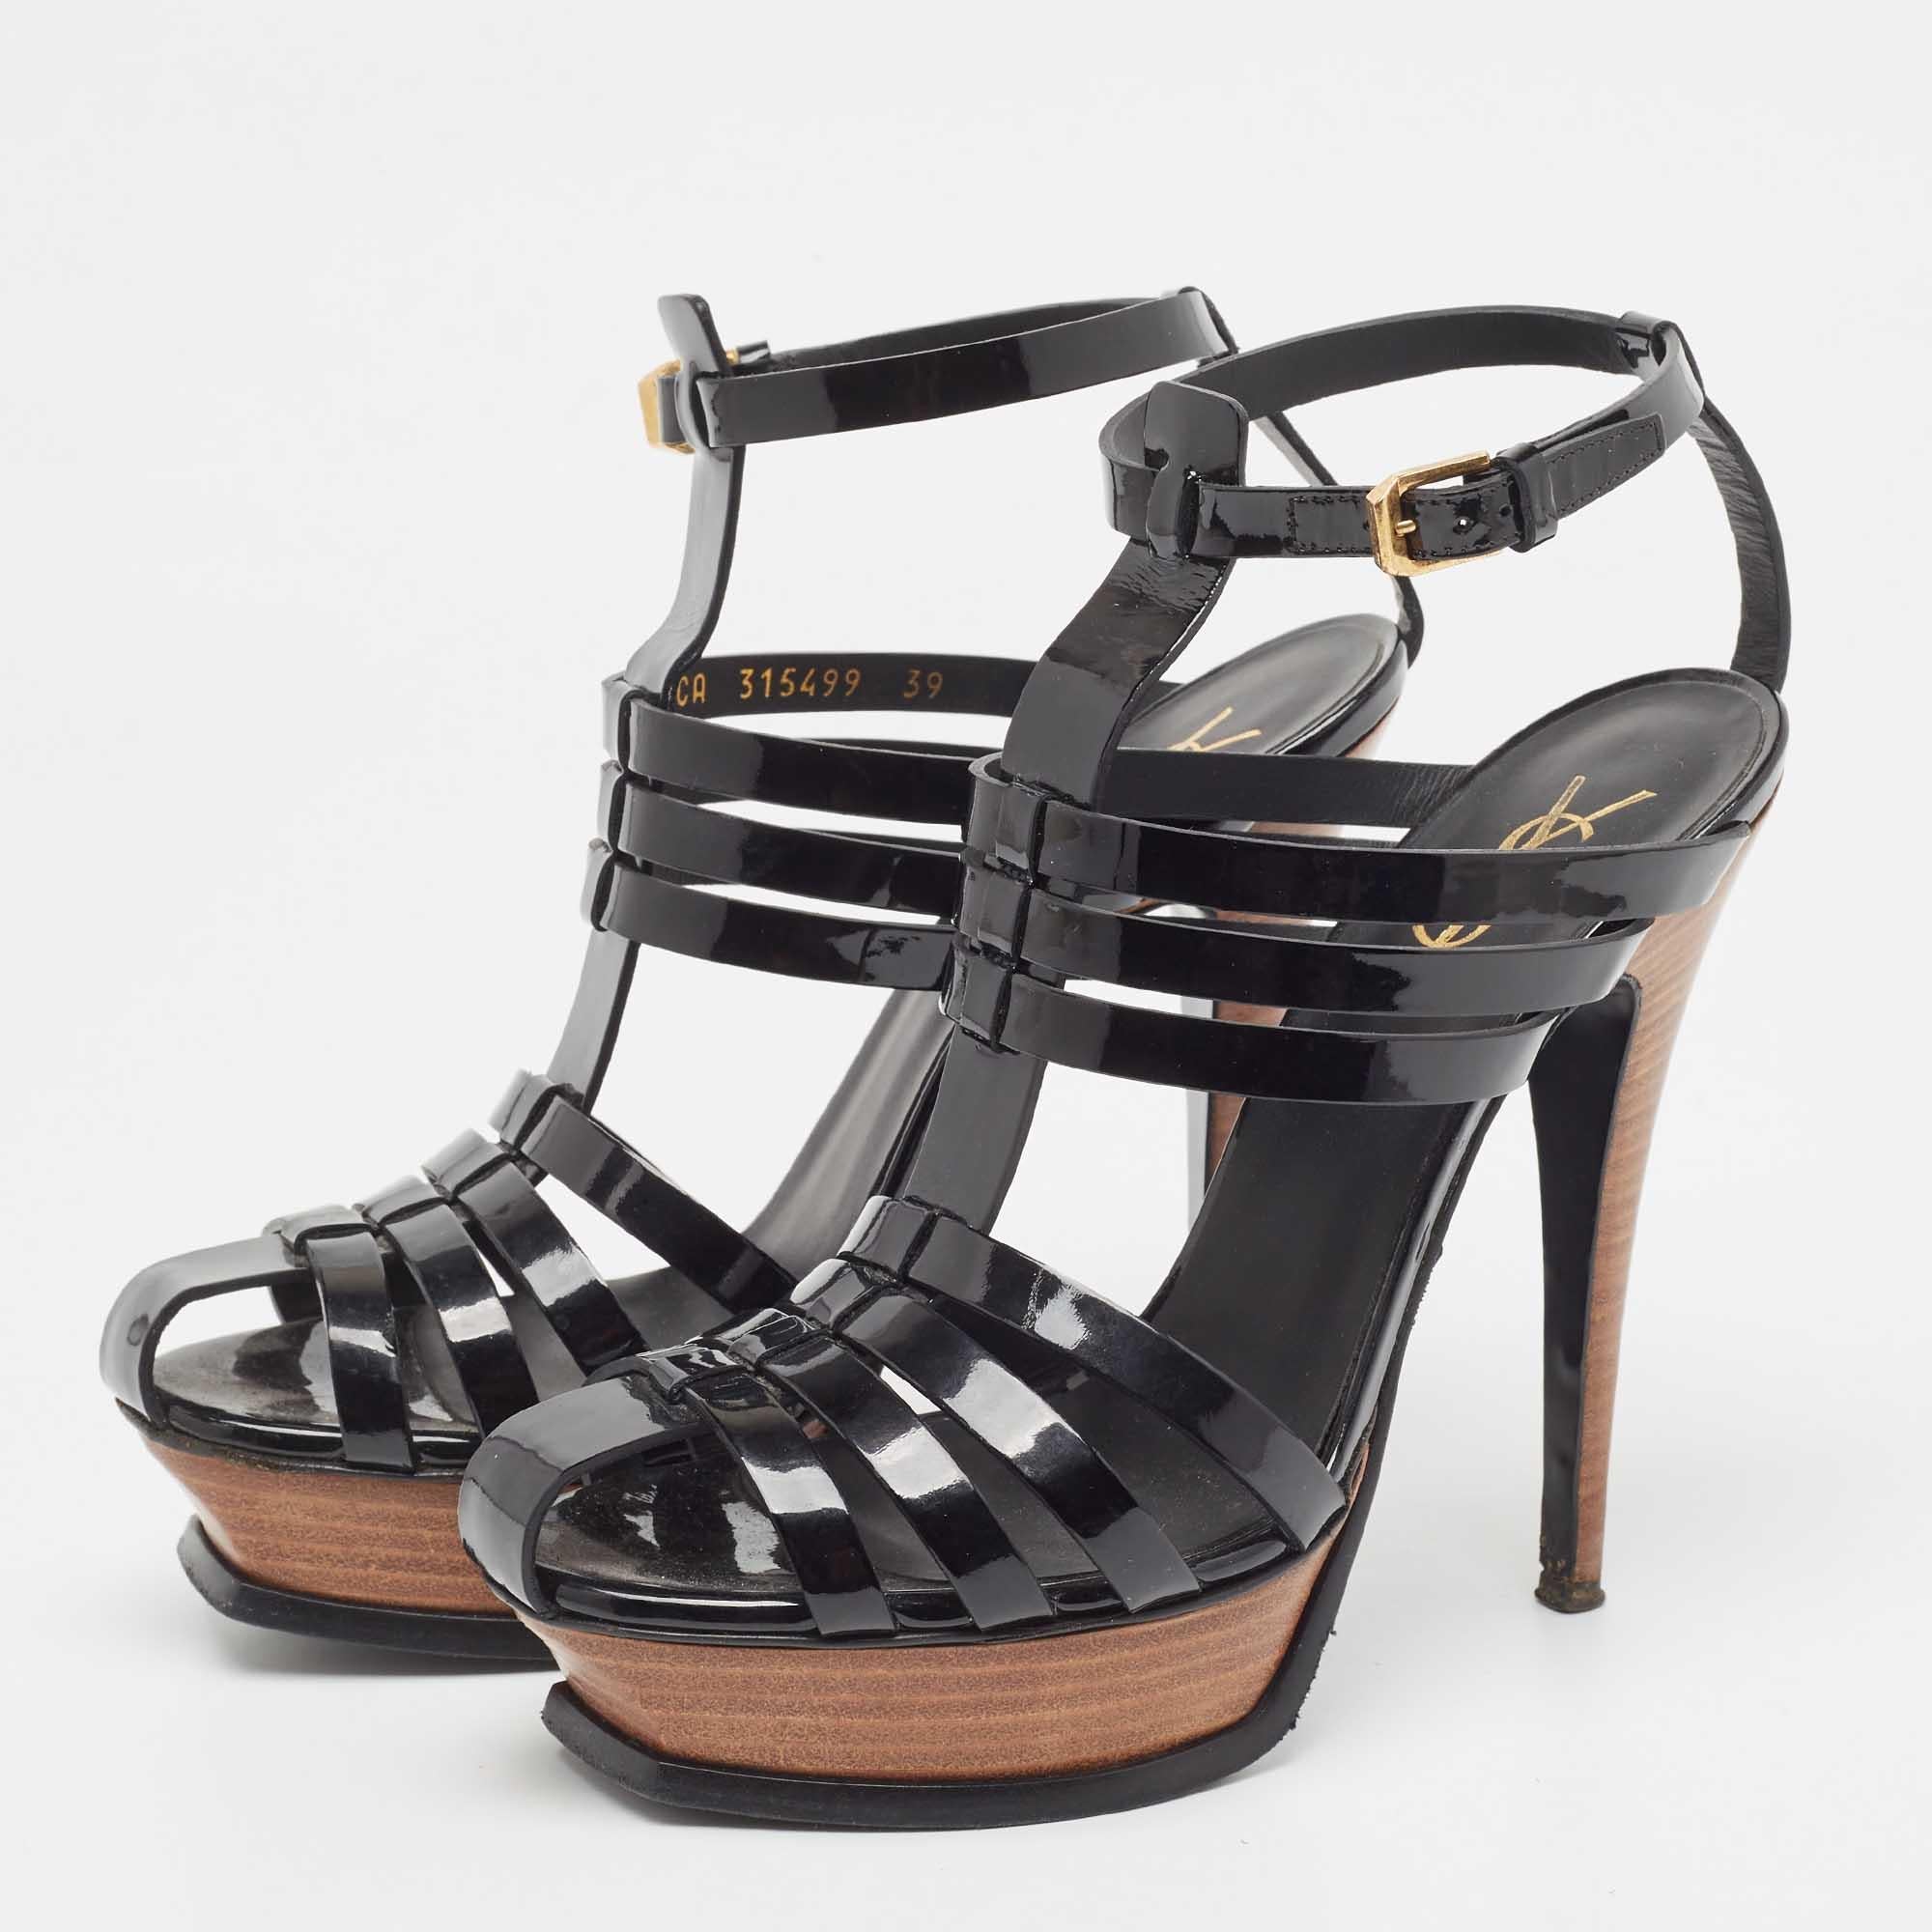 Yves Saint Laurent Black Patent Tribute Ankle Strap Sandals Size 39 4